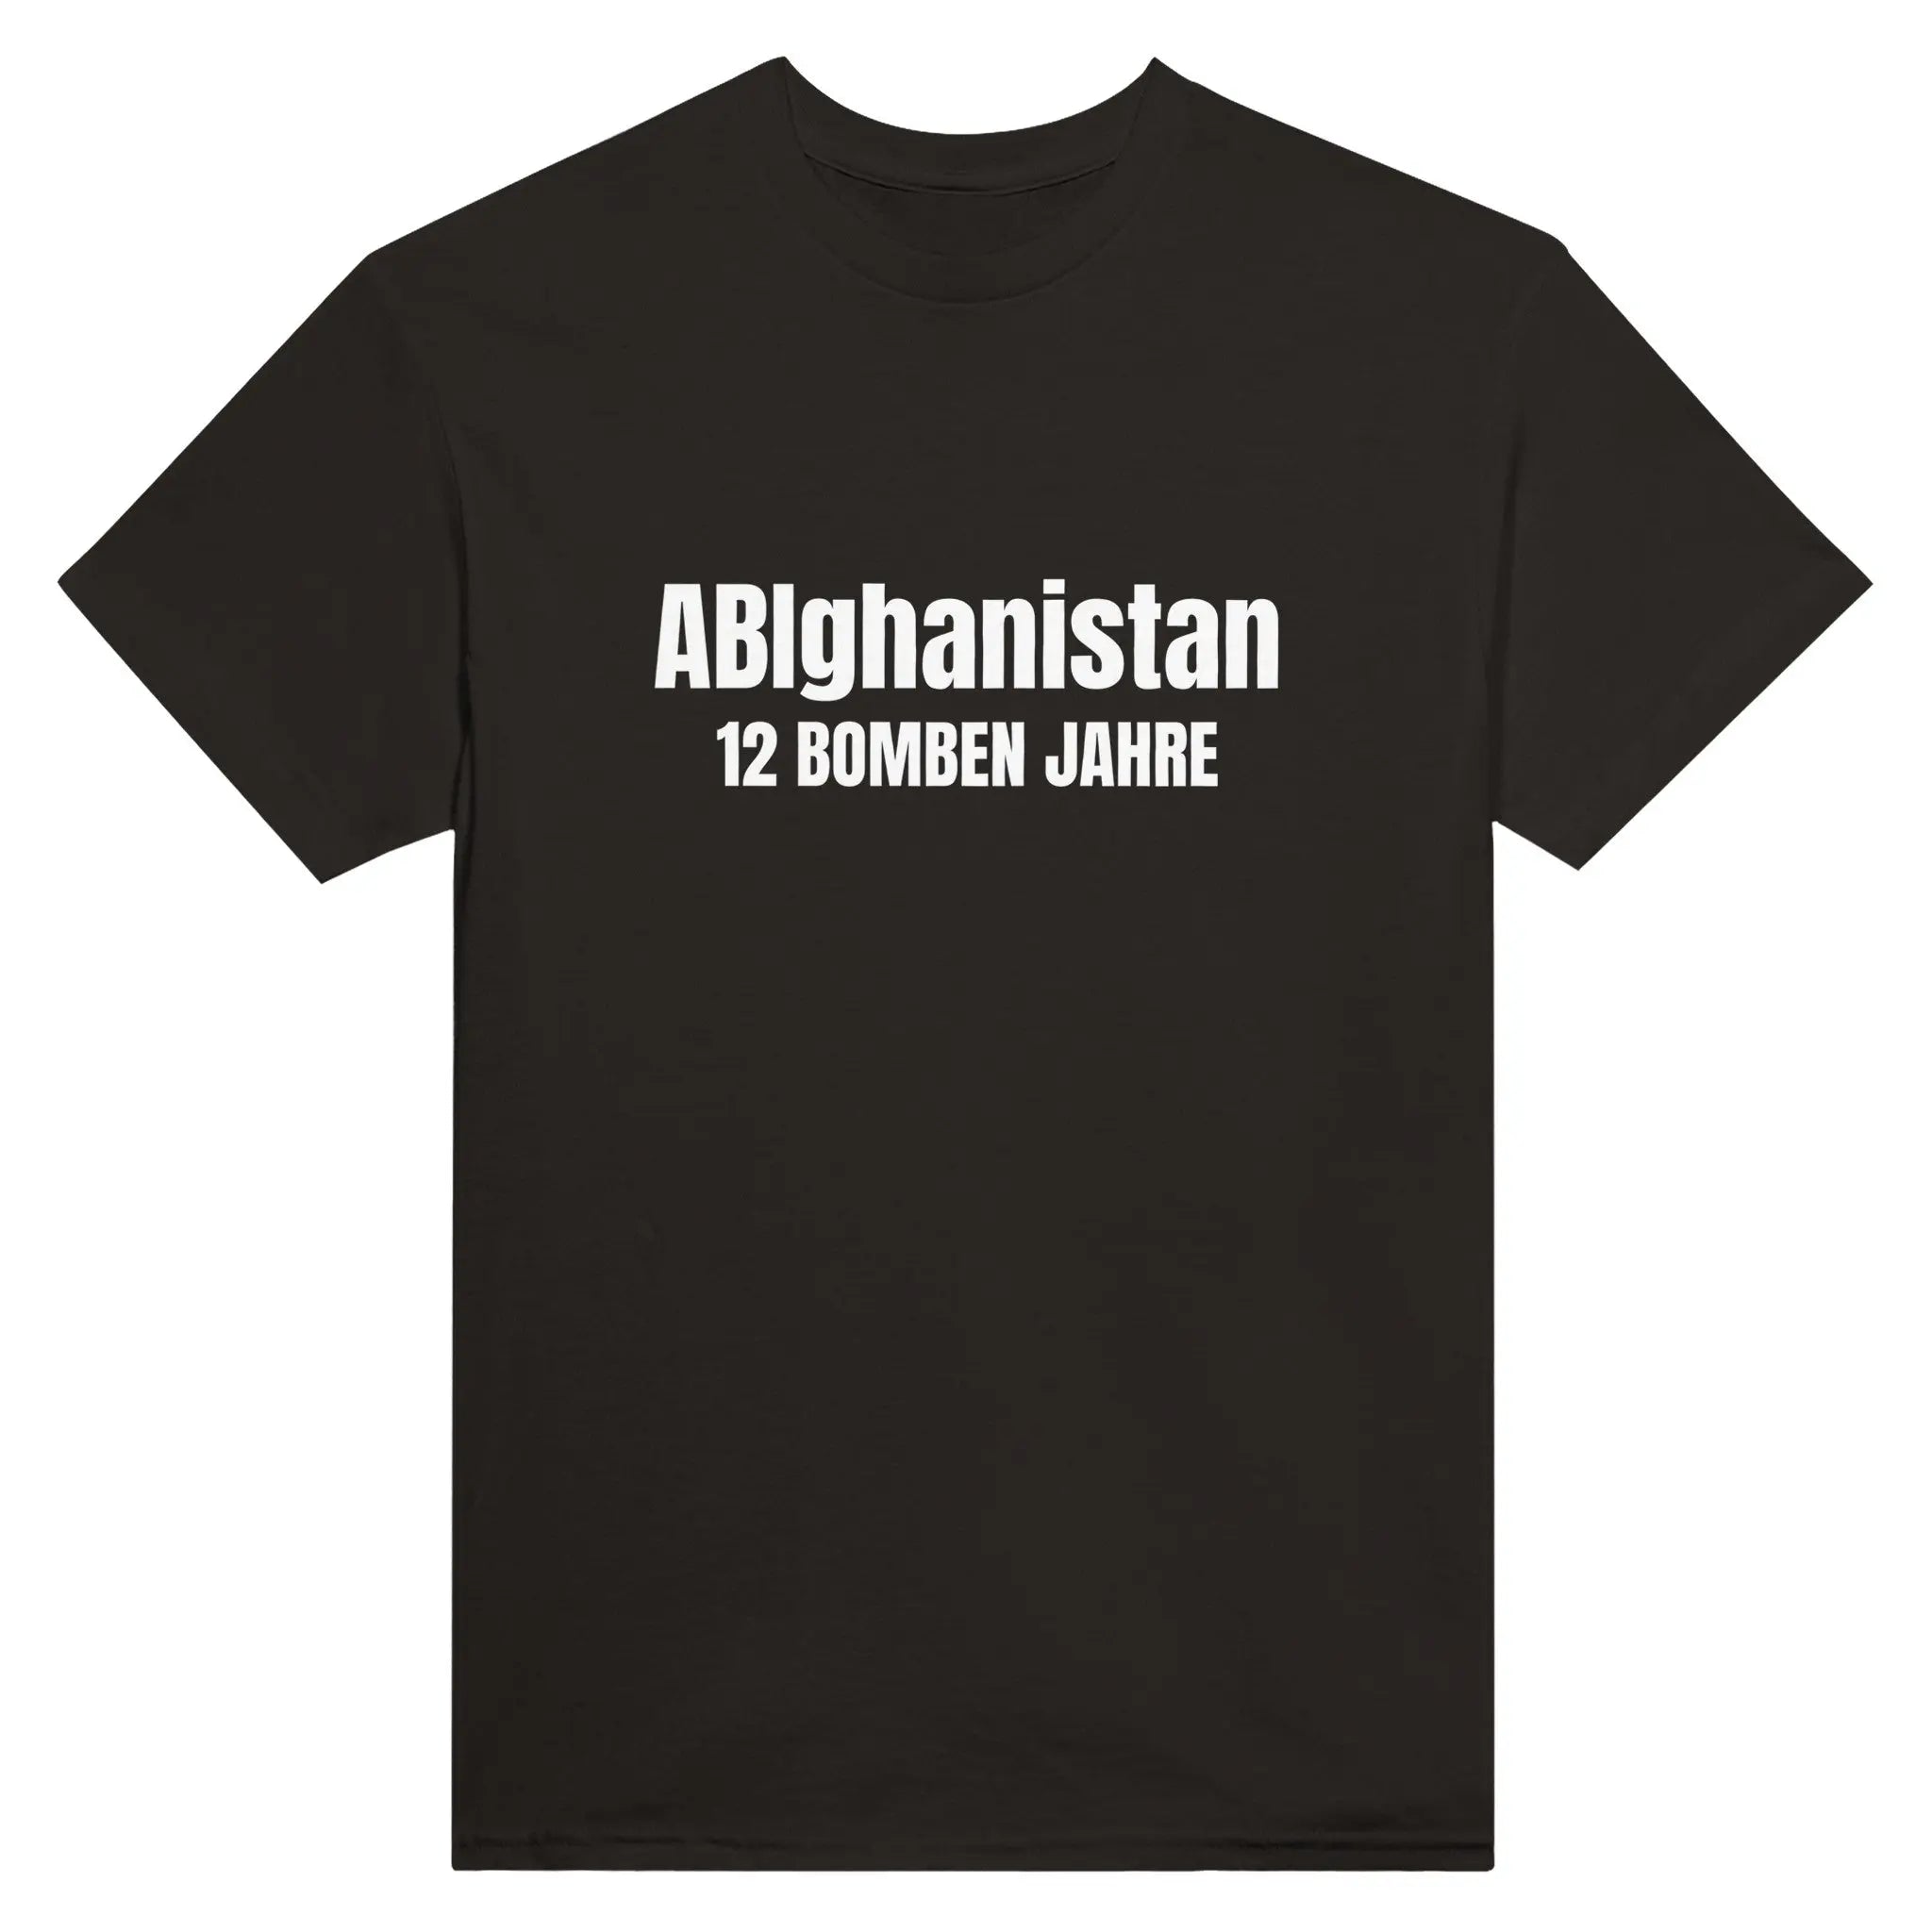 ABIghanistan - 12 Bomben Jahre